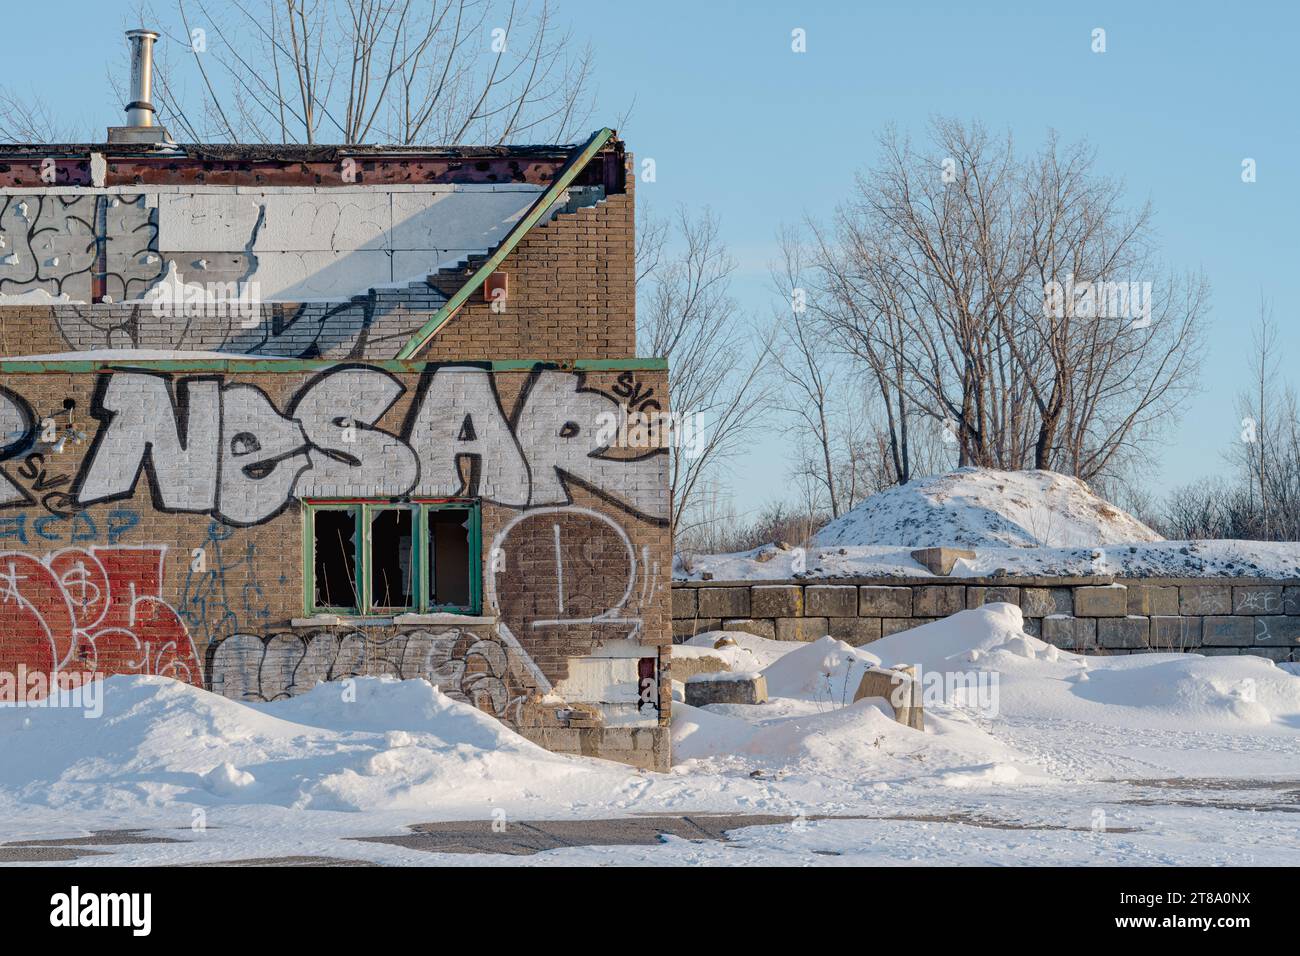 Un bâtiment industriel abandonné avec des graffitis pris sur une journée ensoleillée d'hiver près de Montréal, Québec, Canada Banque D'Images